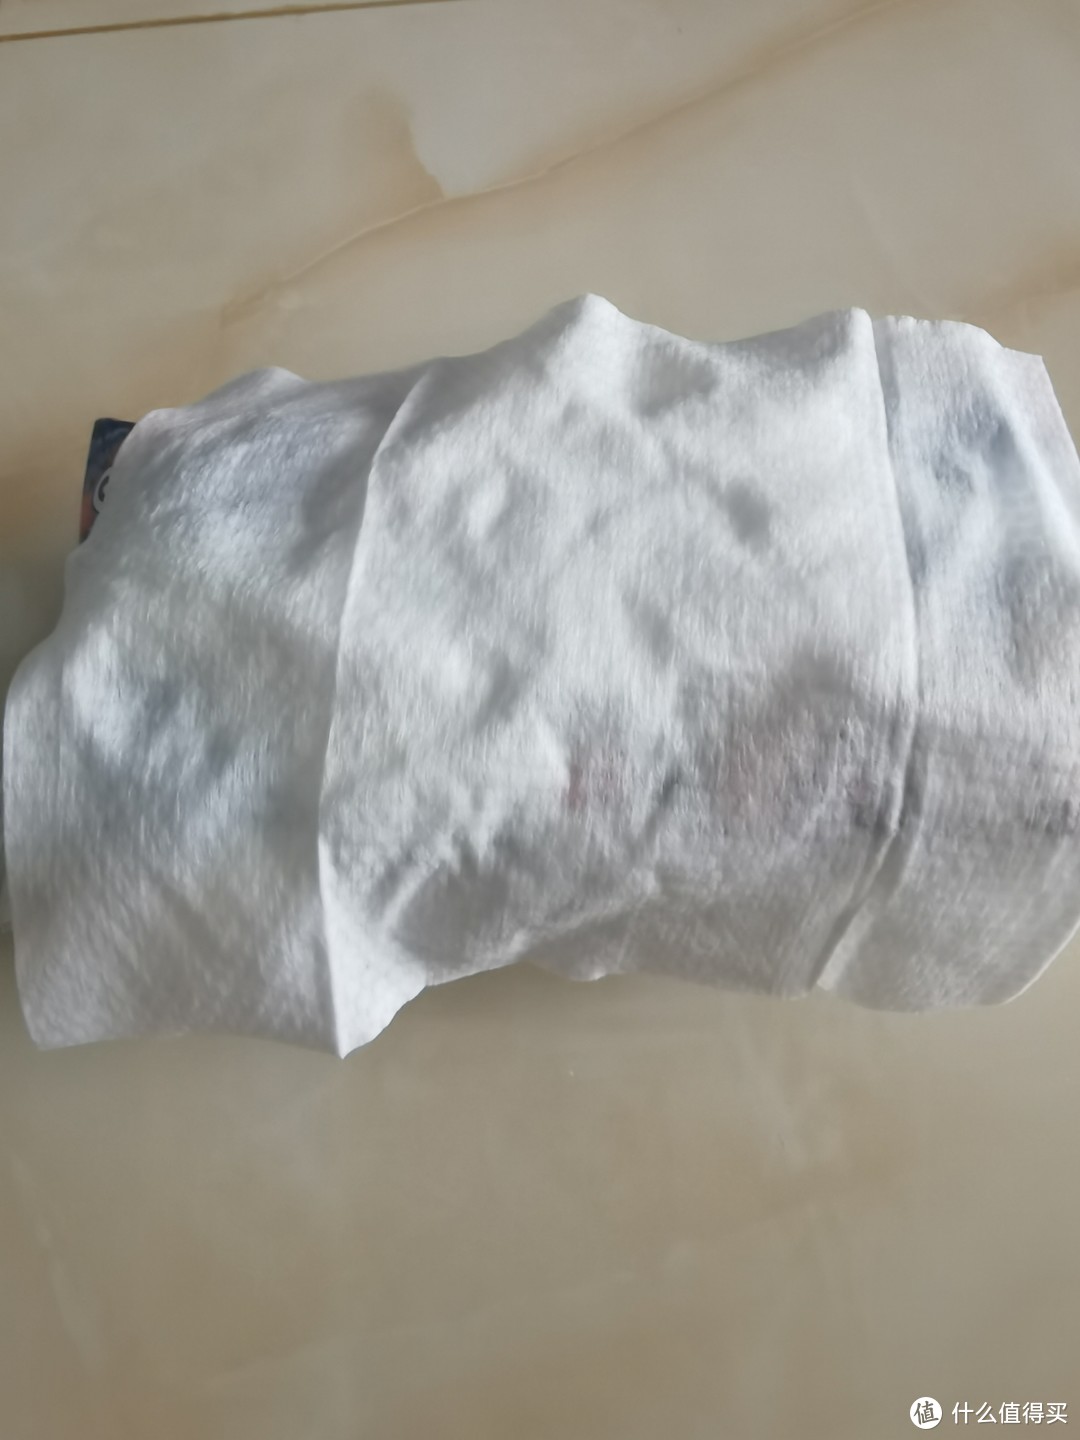 囤了两年的怡恩贝婴儿湿纸巾还没用完